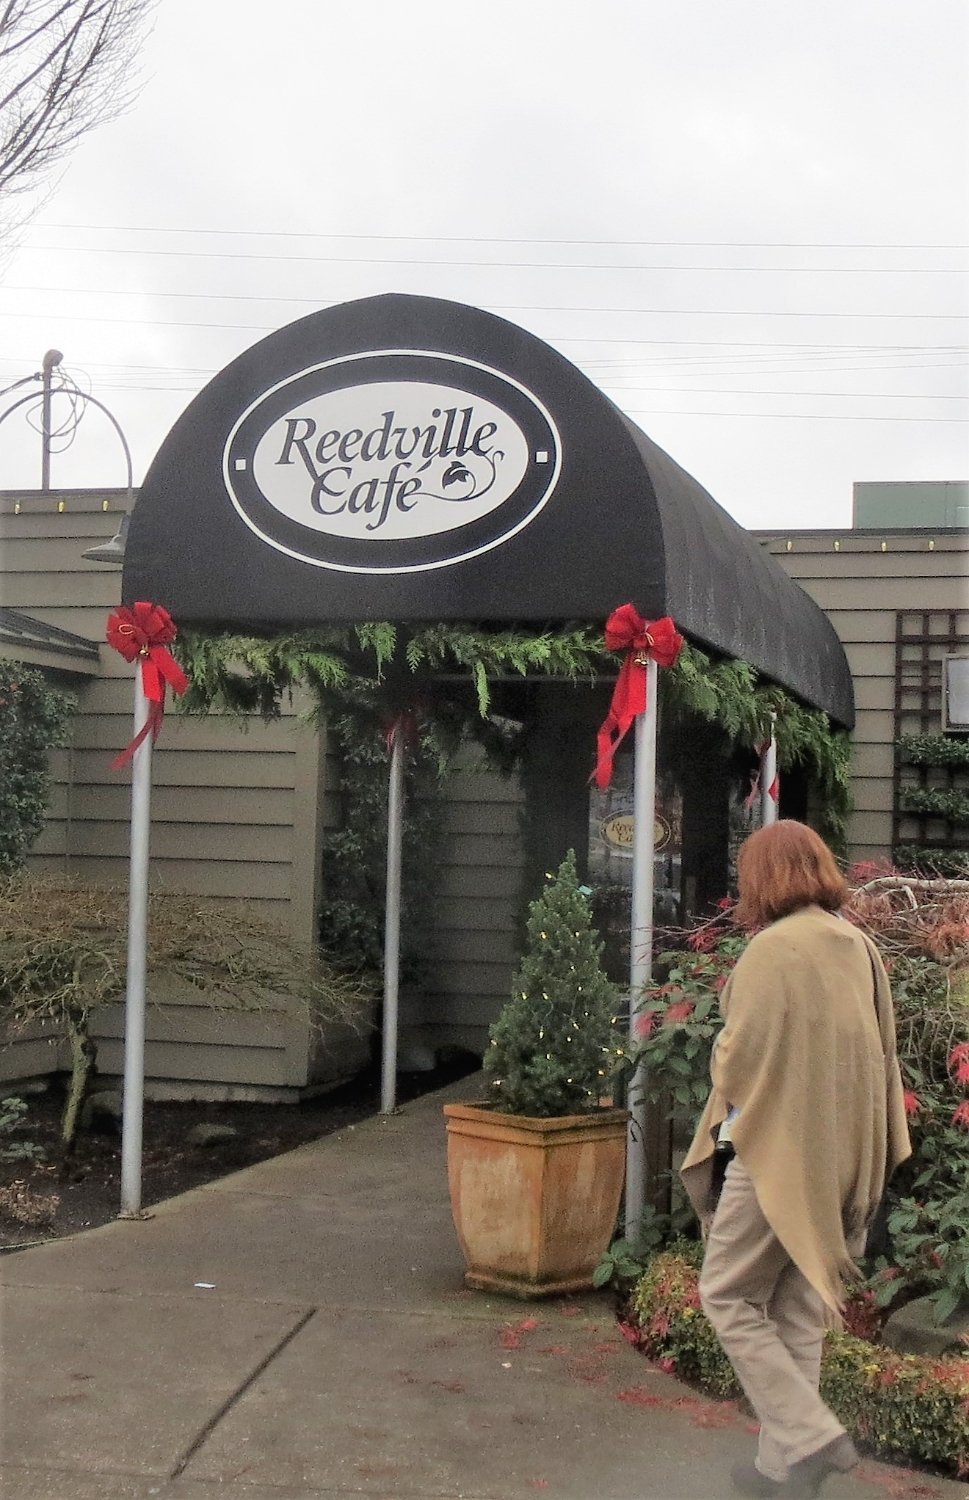 Reedville Cafe